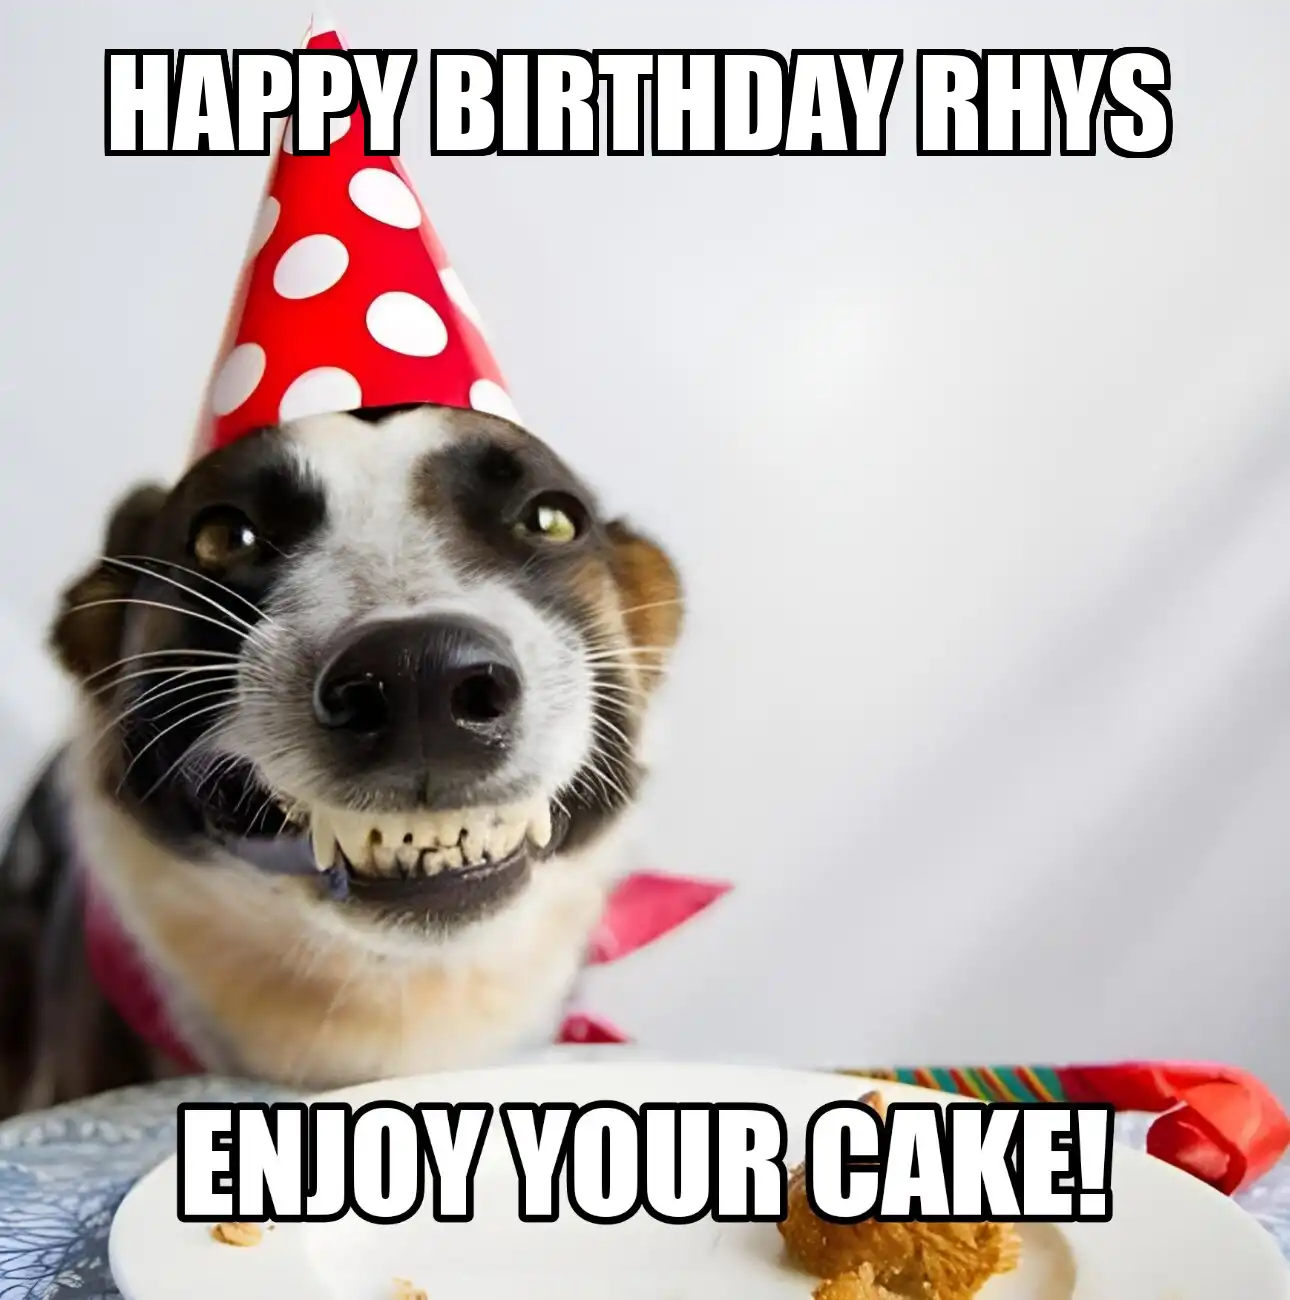 Happy Birthday Rhys Enjoy Your Cake Dog Meme